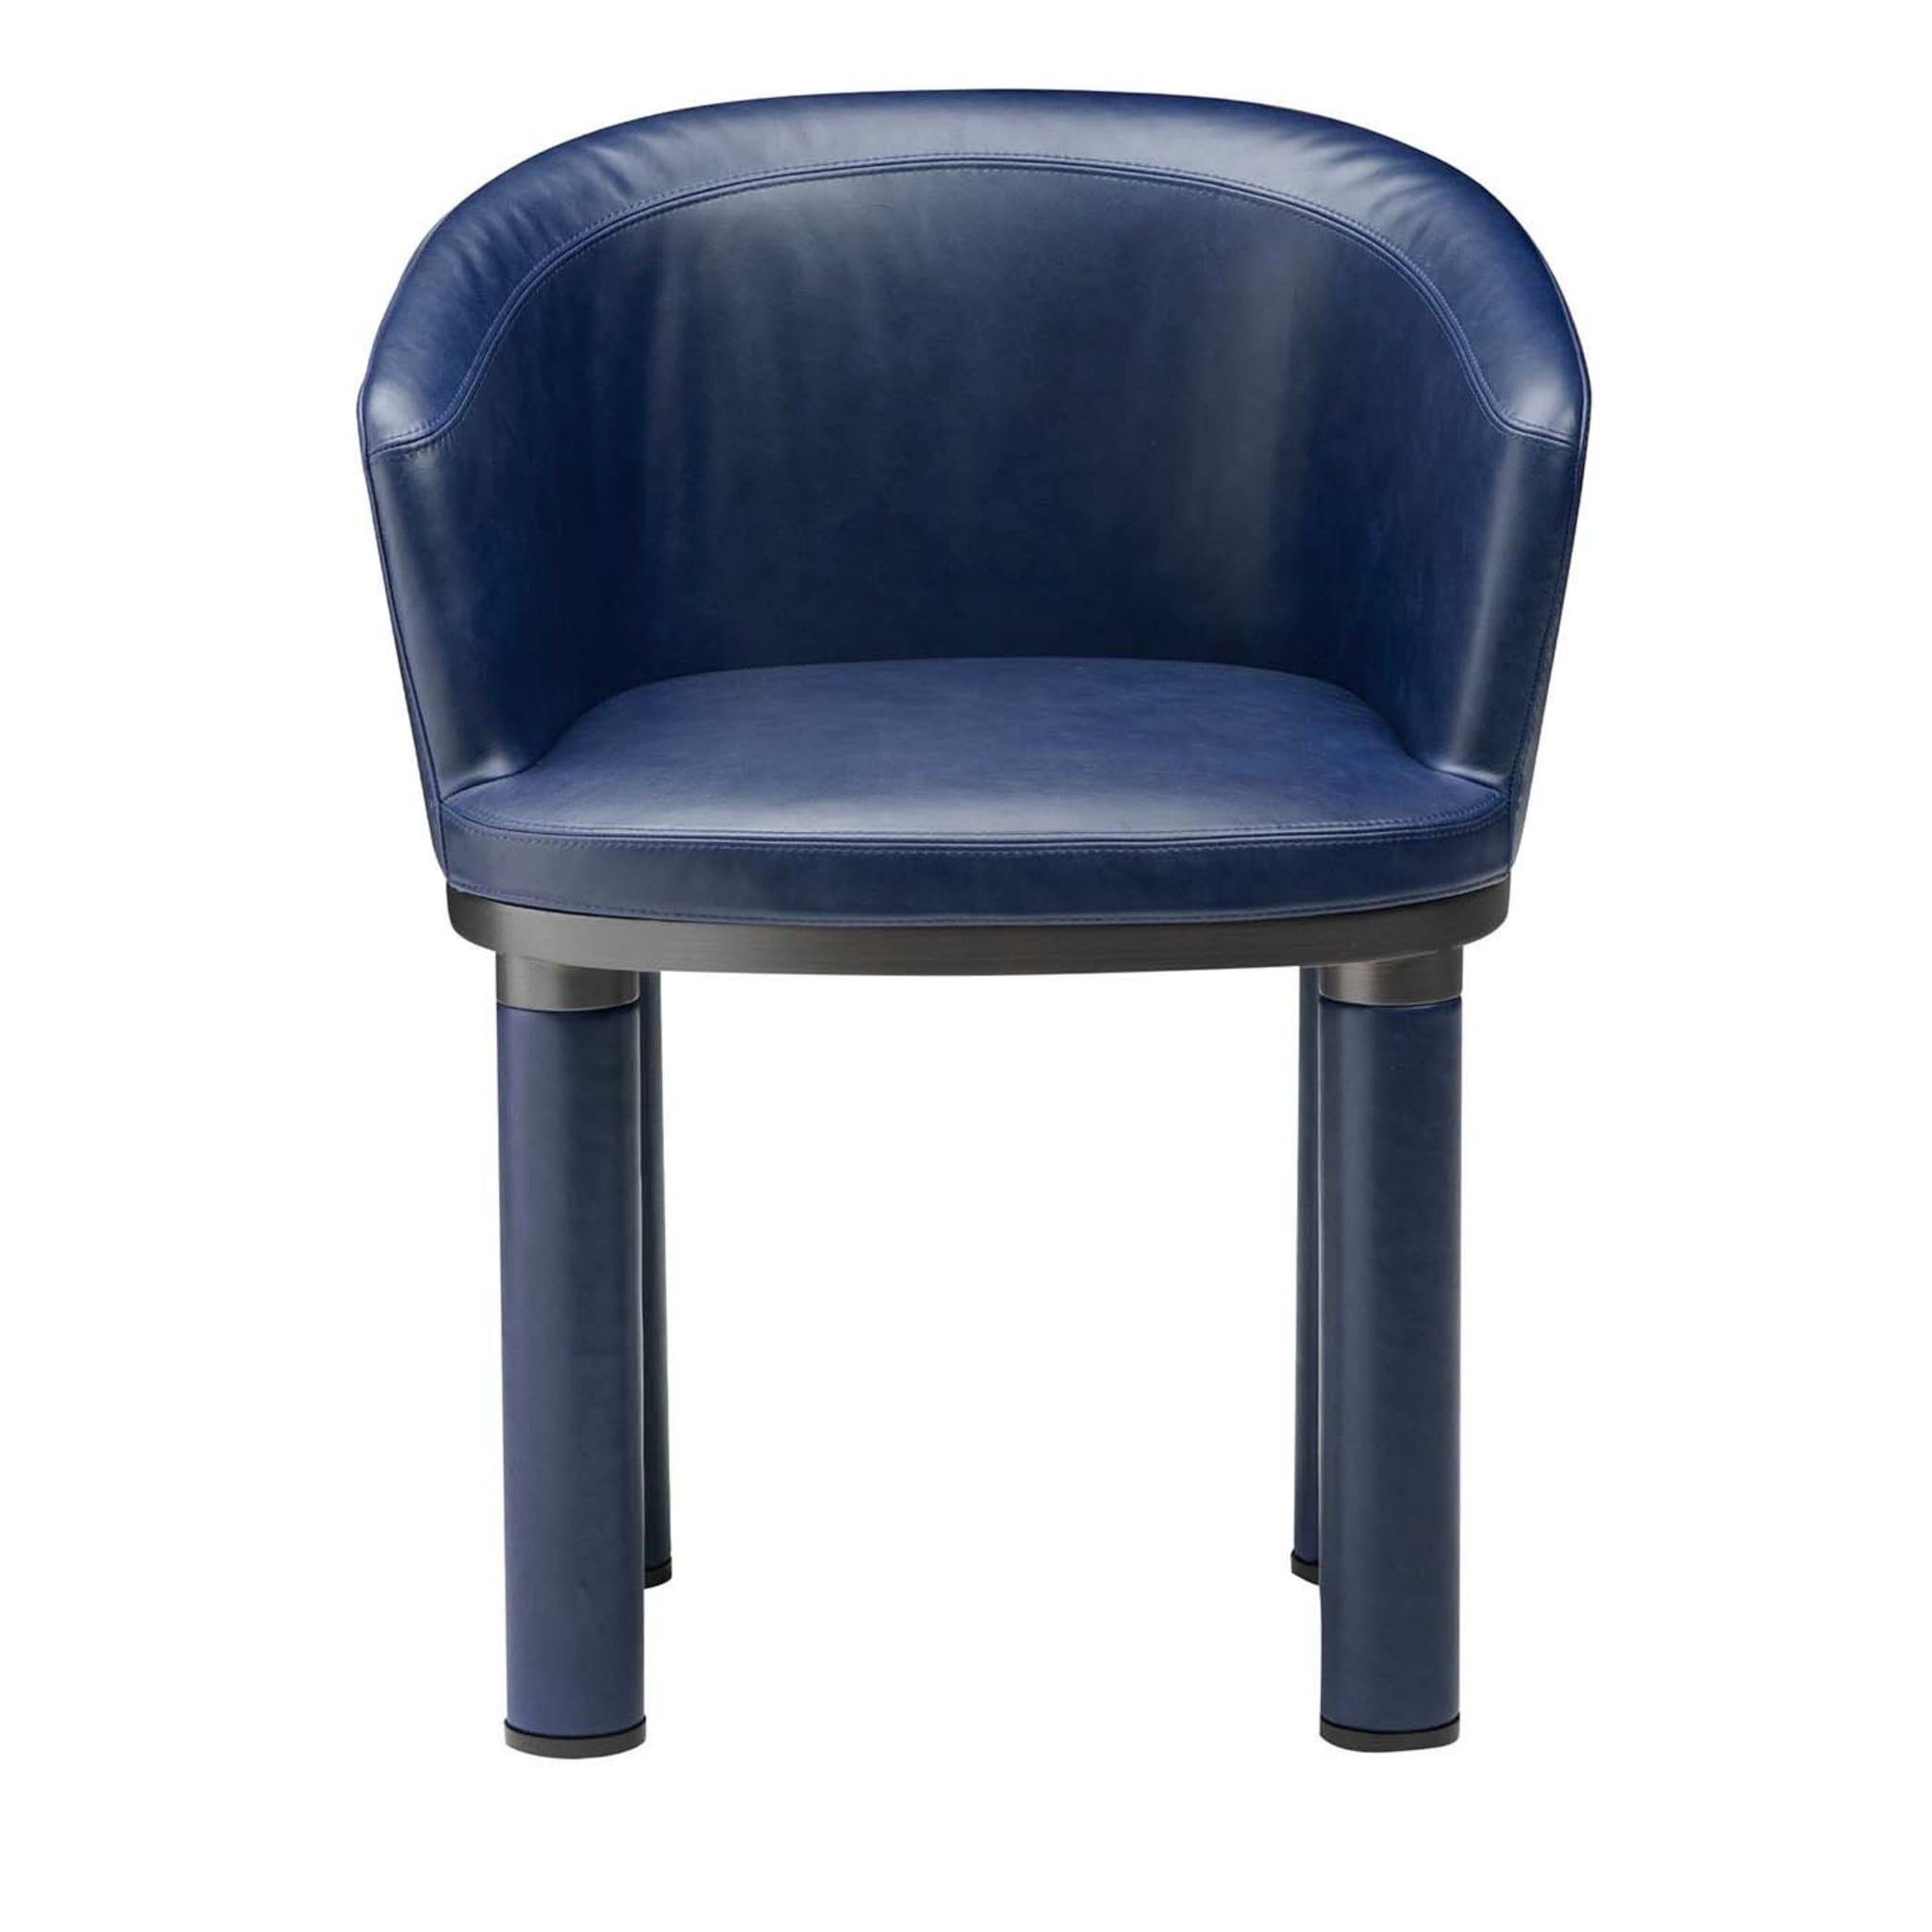 Bold Blue chair - Main view